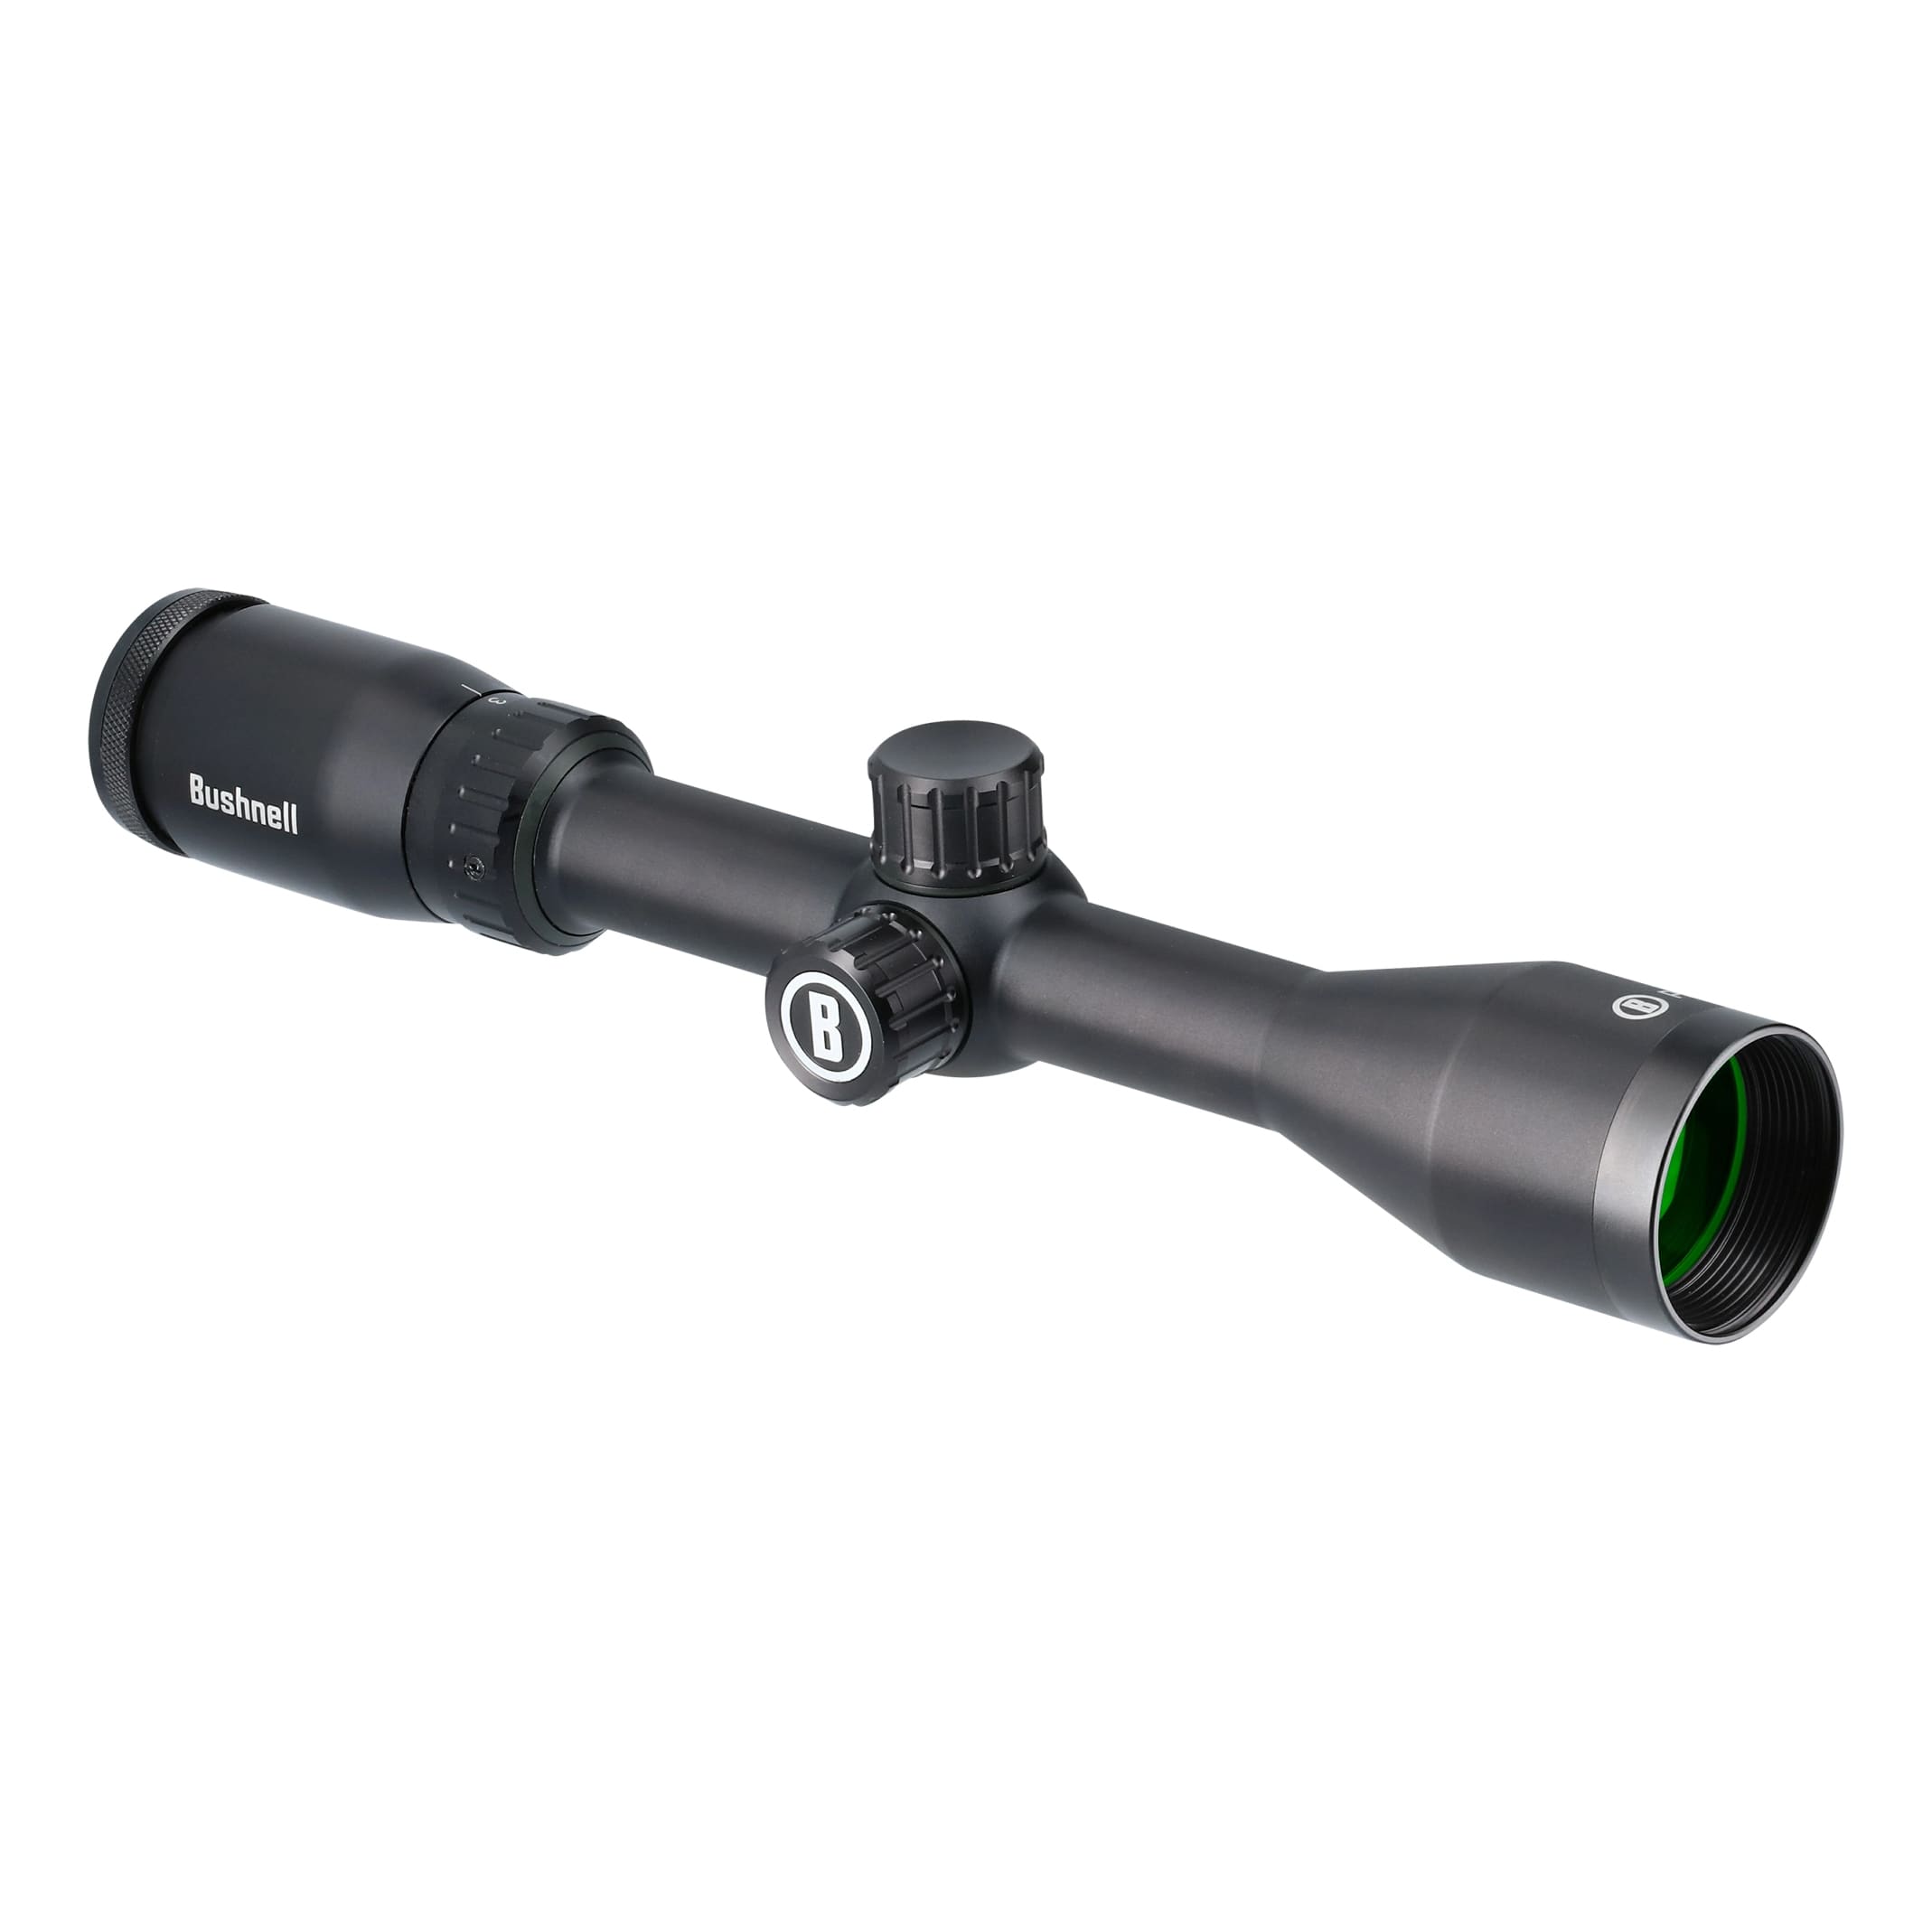 Vortex® Diamondback® Tactical Riflescopes